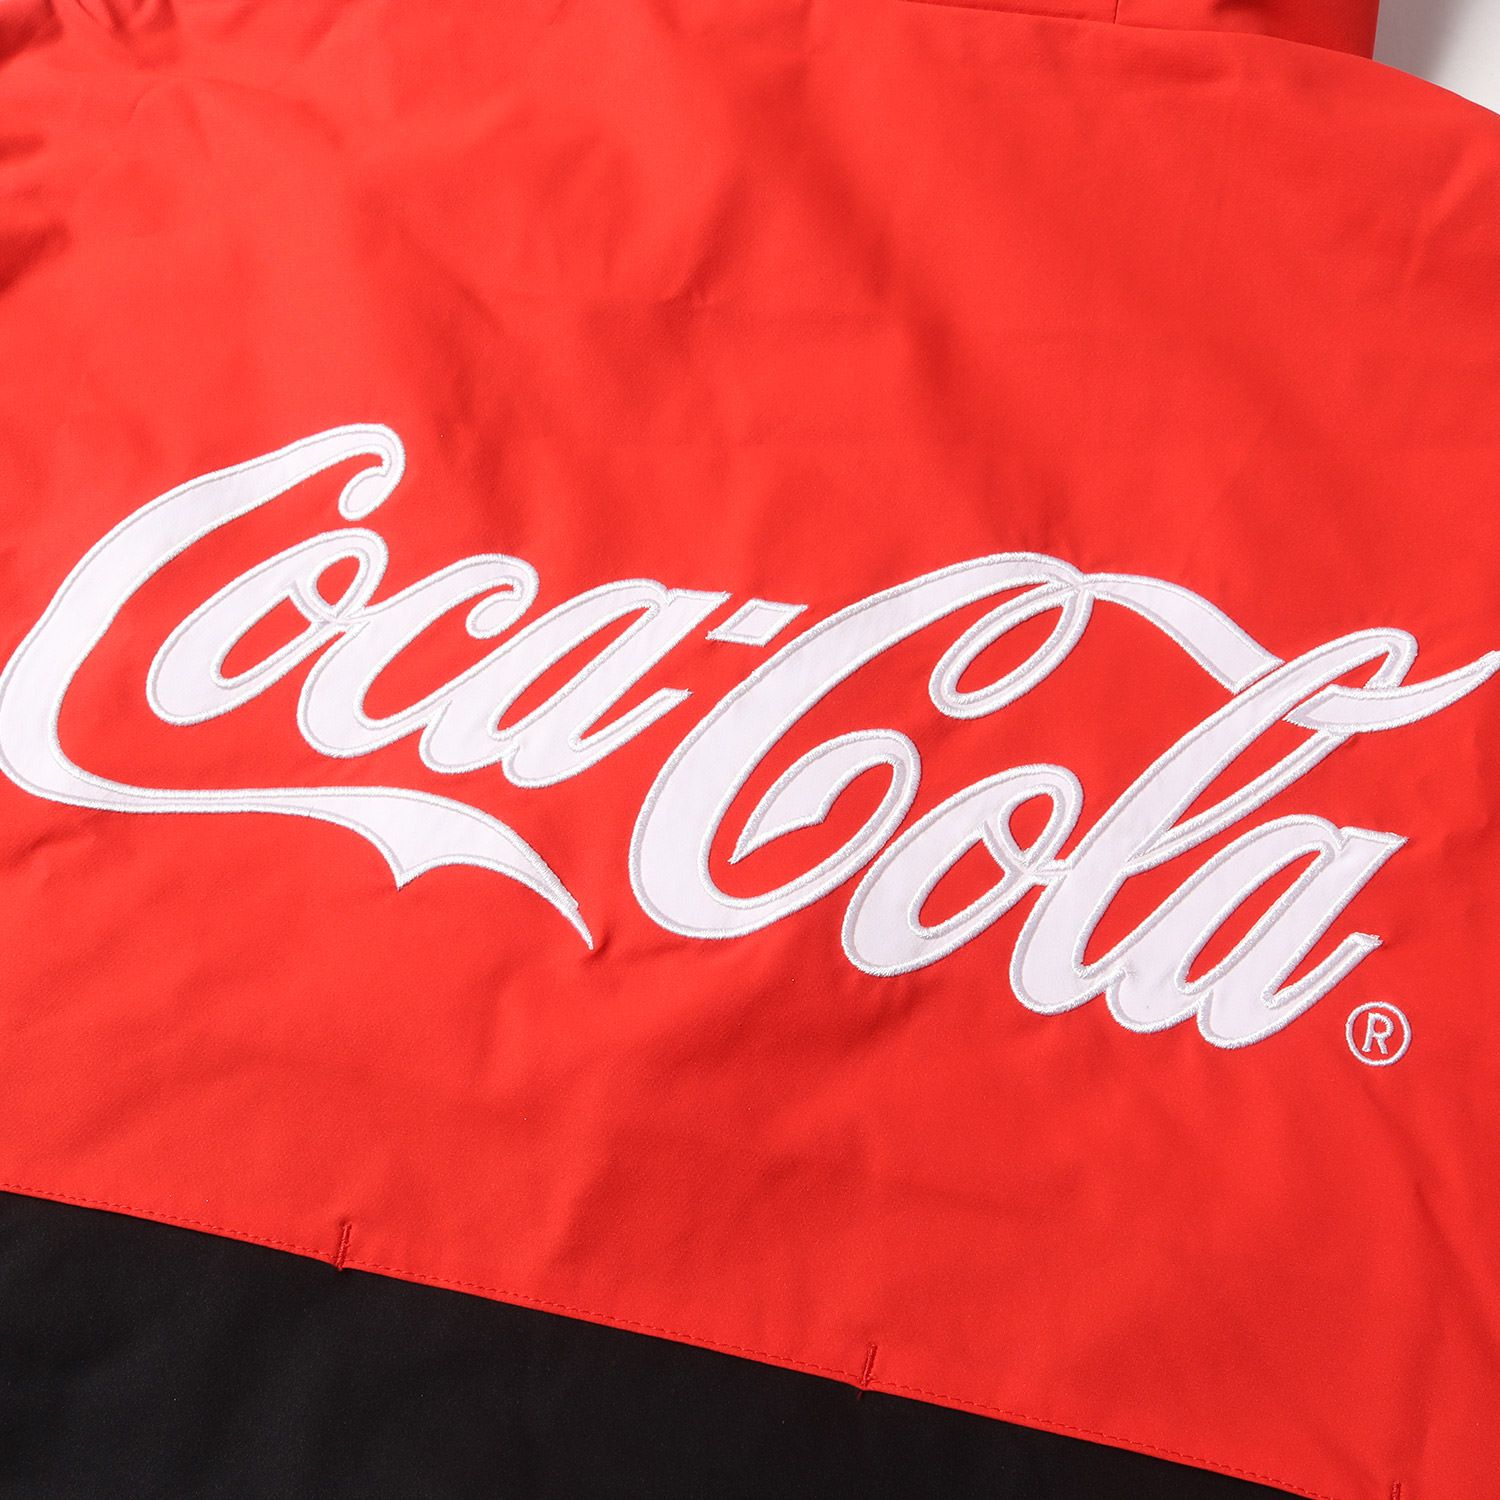 美品 F.C.Real Bristol エフシーレアルブリストル ジャケット Coca-Cola コカ・コーラ ストレッチ ソフトシェル  ウォームアップジャケット COCA-COLA WARM UP JACKET 20SS レッド ブラック 赤黒 L